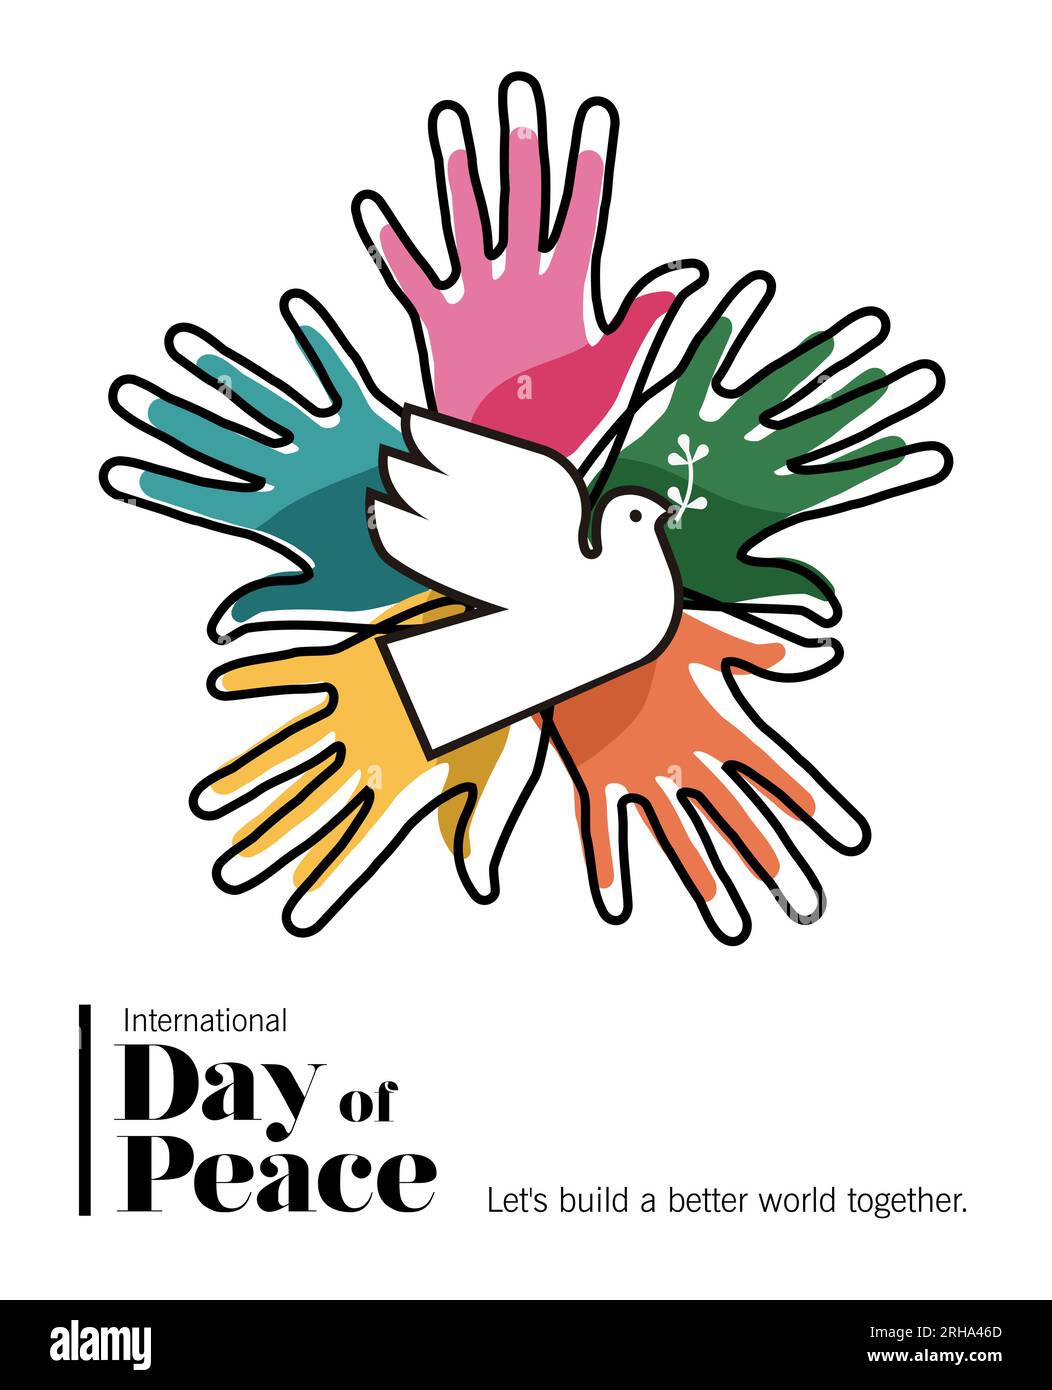 Internationaler Friedenstag Vektorkarte Illustration von bunten Menschen Hände zusammen mit weißem Taubenvogel. Grafikdesign-Konzept zur Feier Stock Vektor